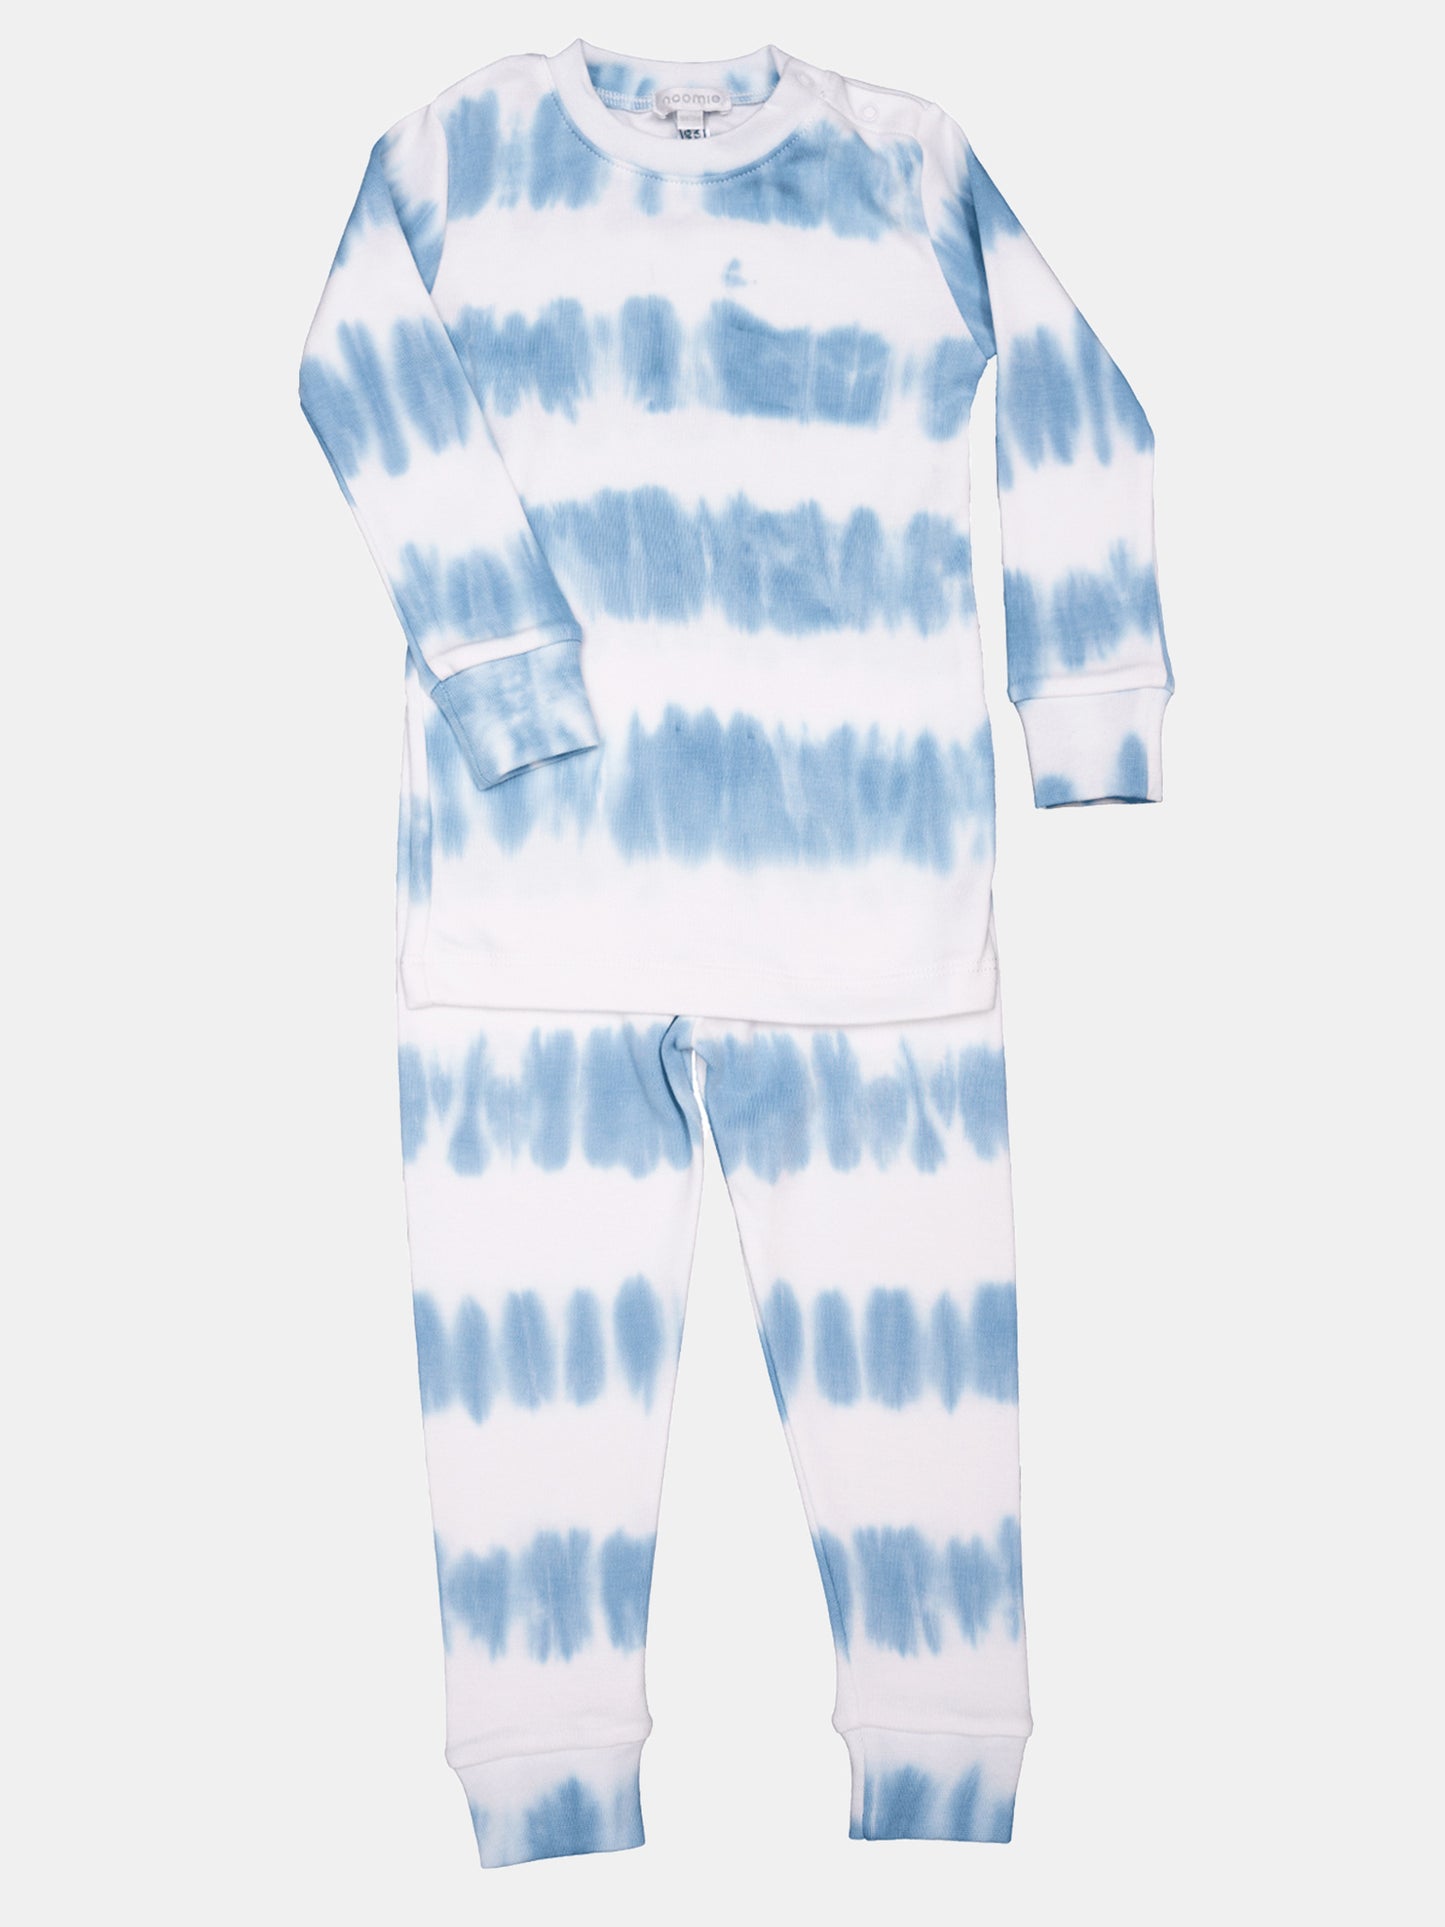 Baby Noomie Boys' Striped Tie Dye Two-Piece Pajama Set